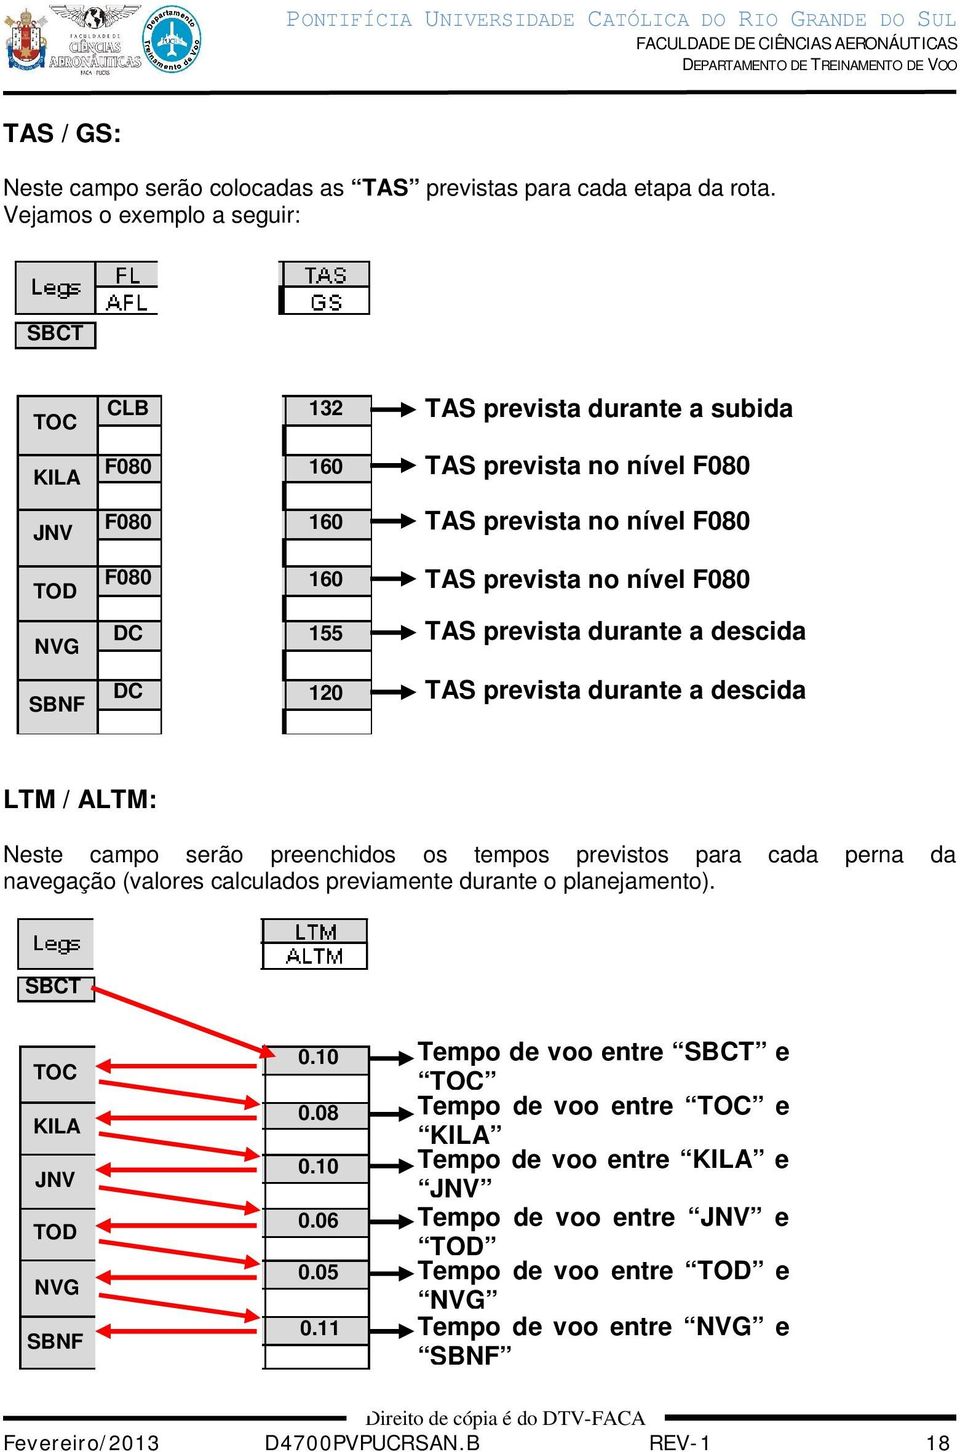 NVG DC 155 TAS prevista durante a descida SBNF DC 120 TAS prevista durante a descida LTM / ALTM: Neste campo serão preenchidos os tempos previstos para cada perna da navegação (valores calculados